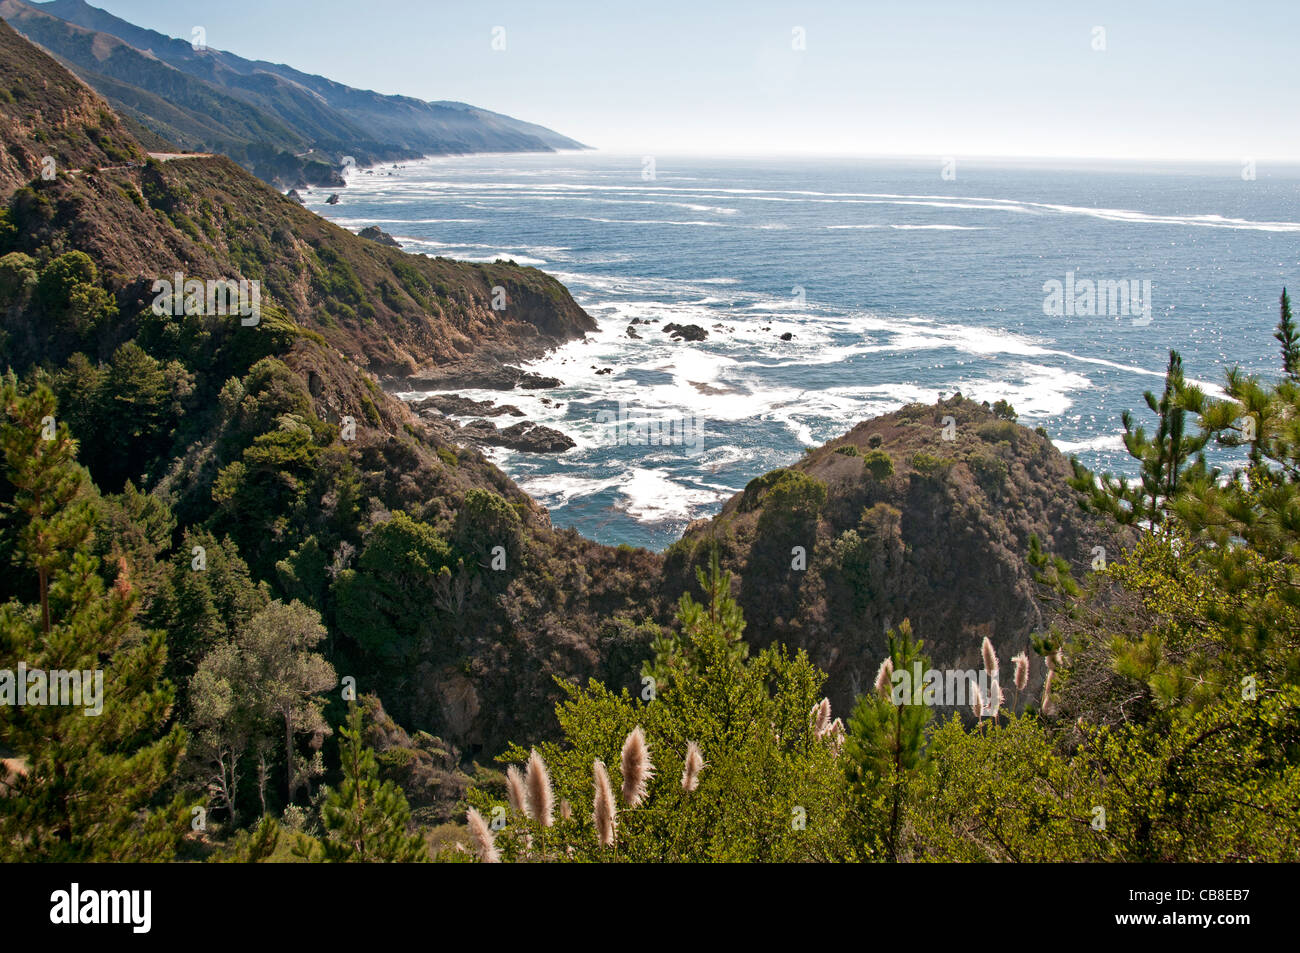 La côte sauvage de Big Sur Californie Côte de l'océan Pacifique plage mer United States Banque D'Images